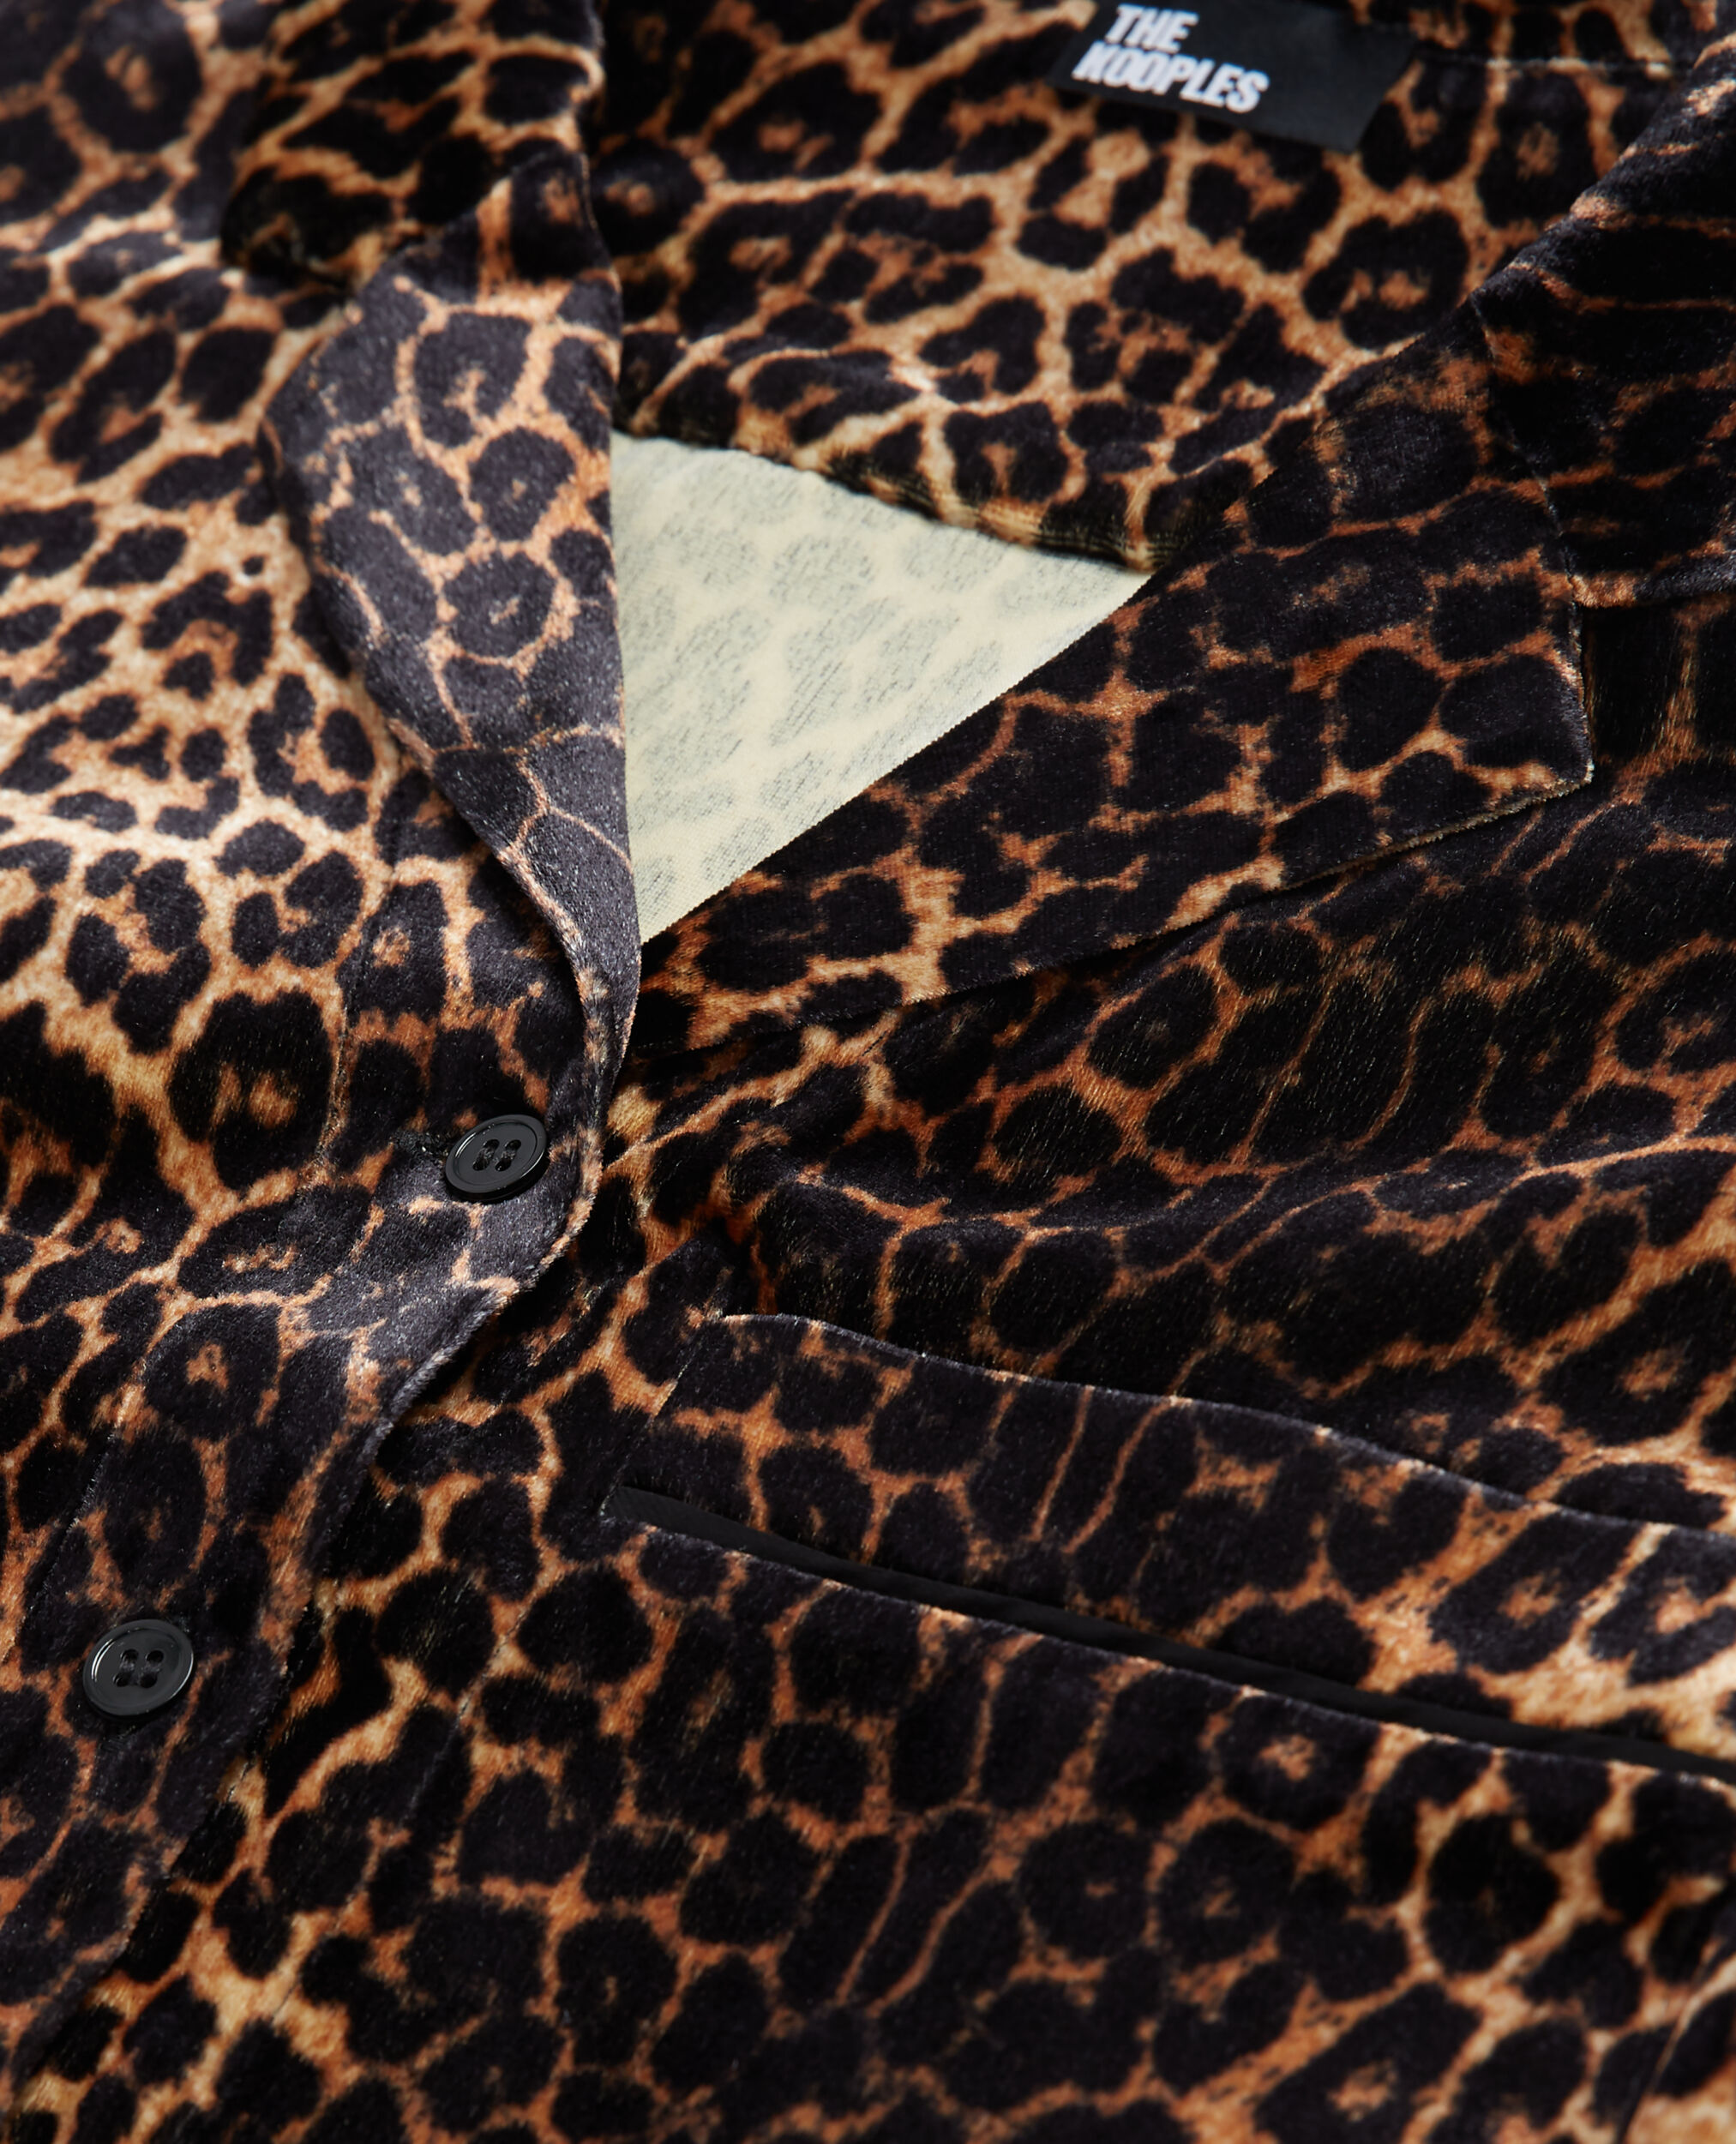 Velvet leopard print shirt, LEOPARD, hi-res image number null